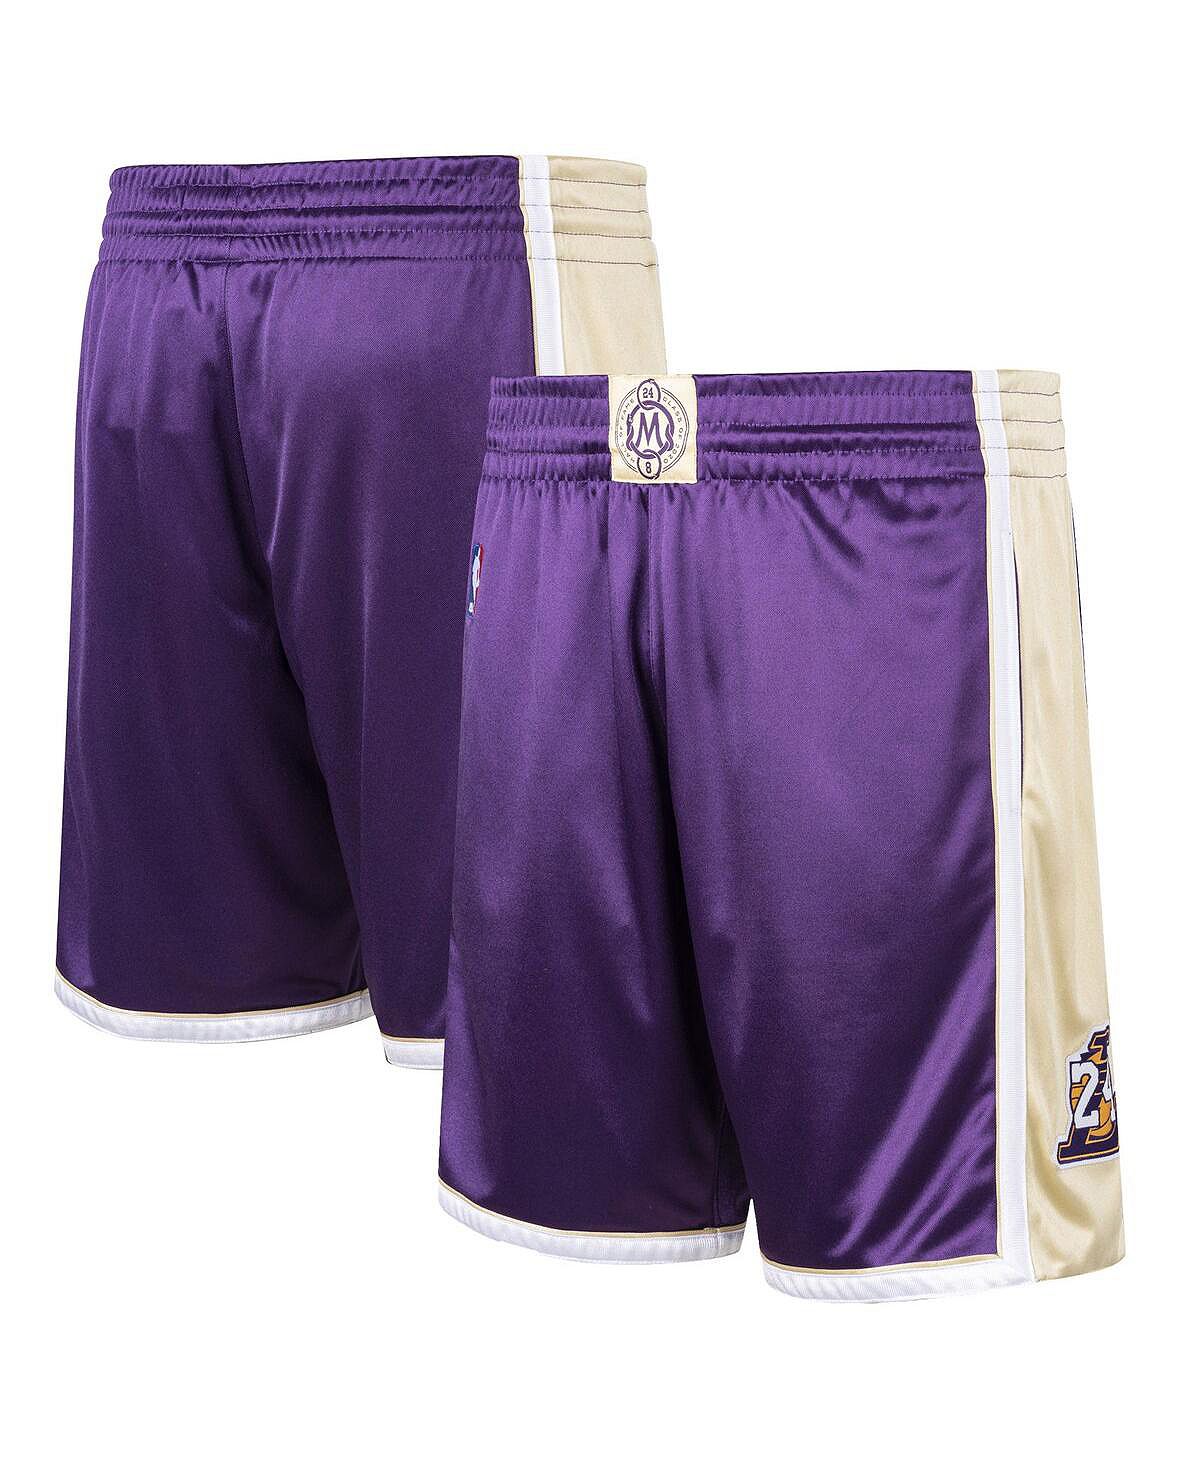 Мужские шорты Kobe Bryant Purple из Зала славы Лос-Анджелес Лейкерс, класс 2020 года, подлинные классические шорты из твердой древесины Mitchell & Ness